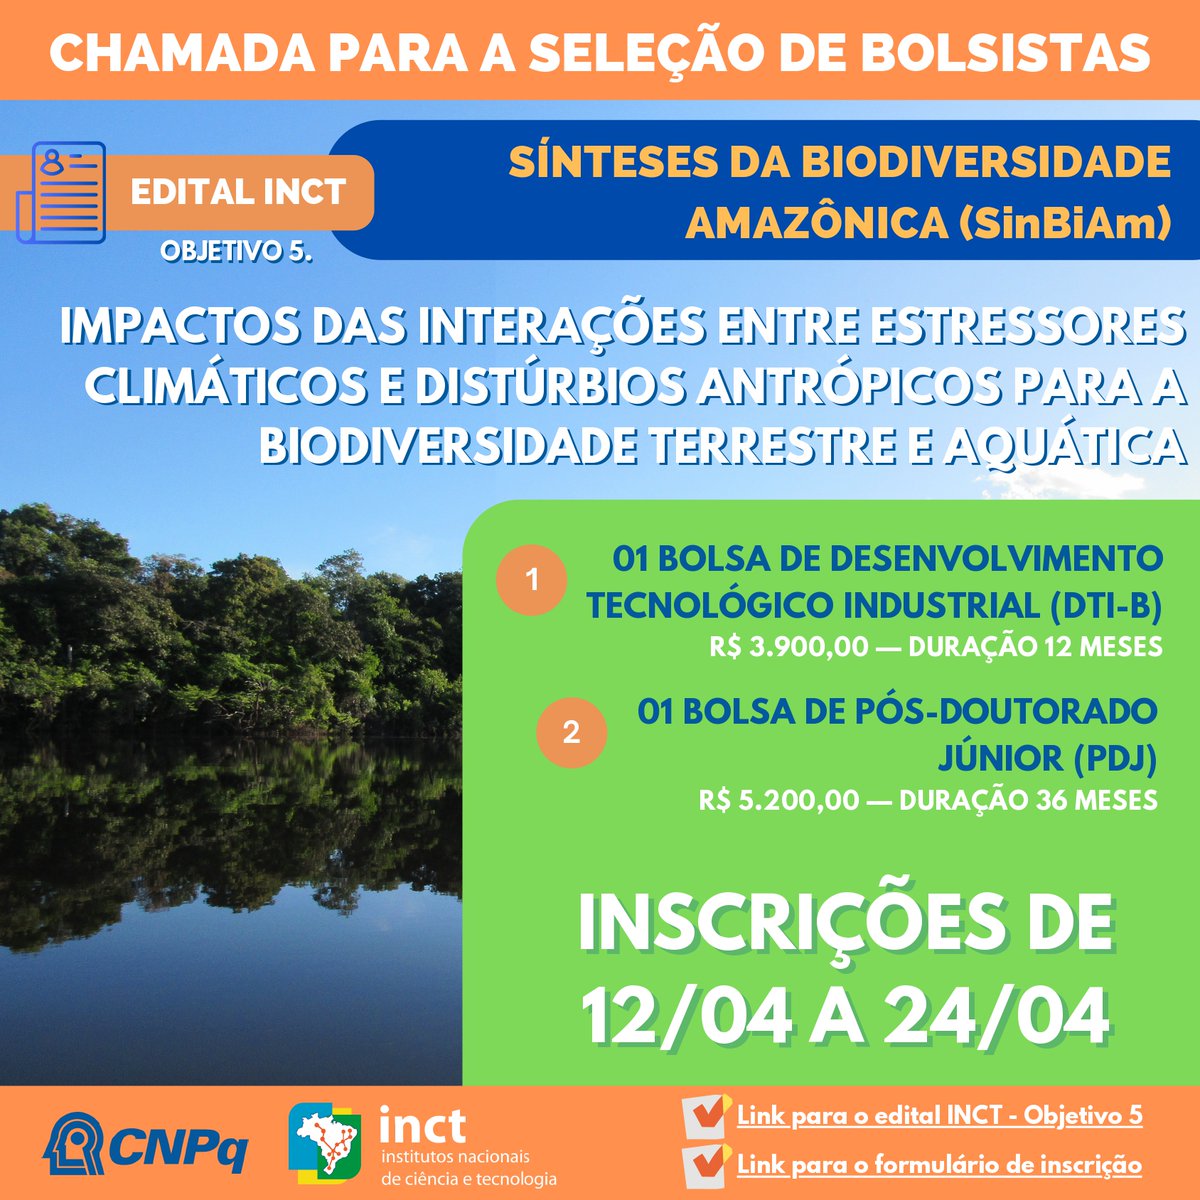 ‼️Duas bolsas, RT por favor 📷O #INCT - Sínteses da Biodiversidade Amazônica (SinBiAm) abriu edital p/ seleção de 2 bolsistas c/ duração de até 36 meses. Detalhes do edital e do formulário para inscrição no folder abaixo